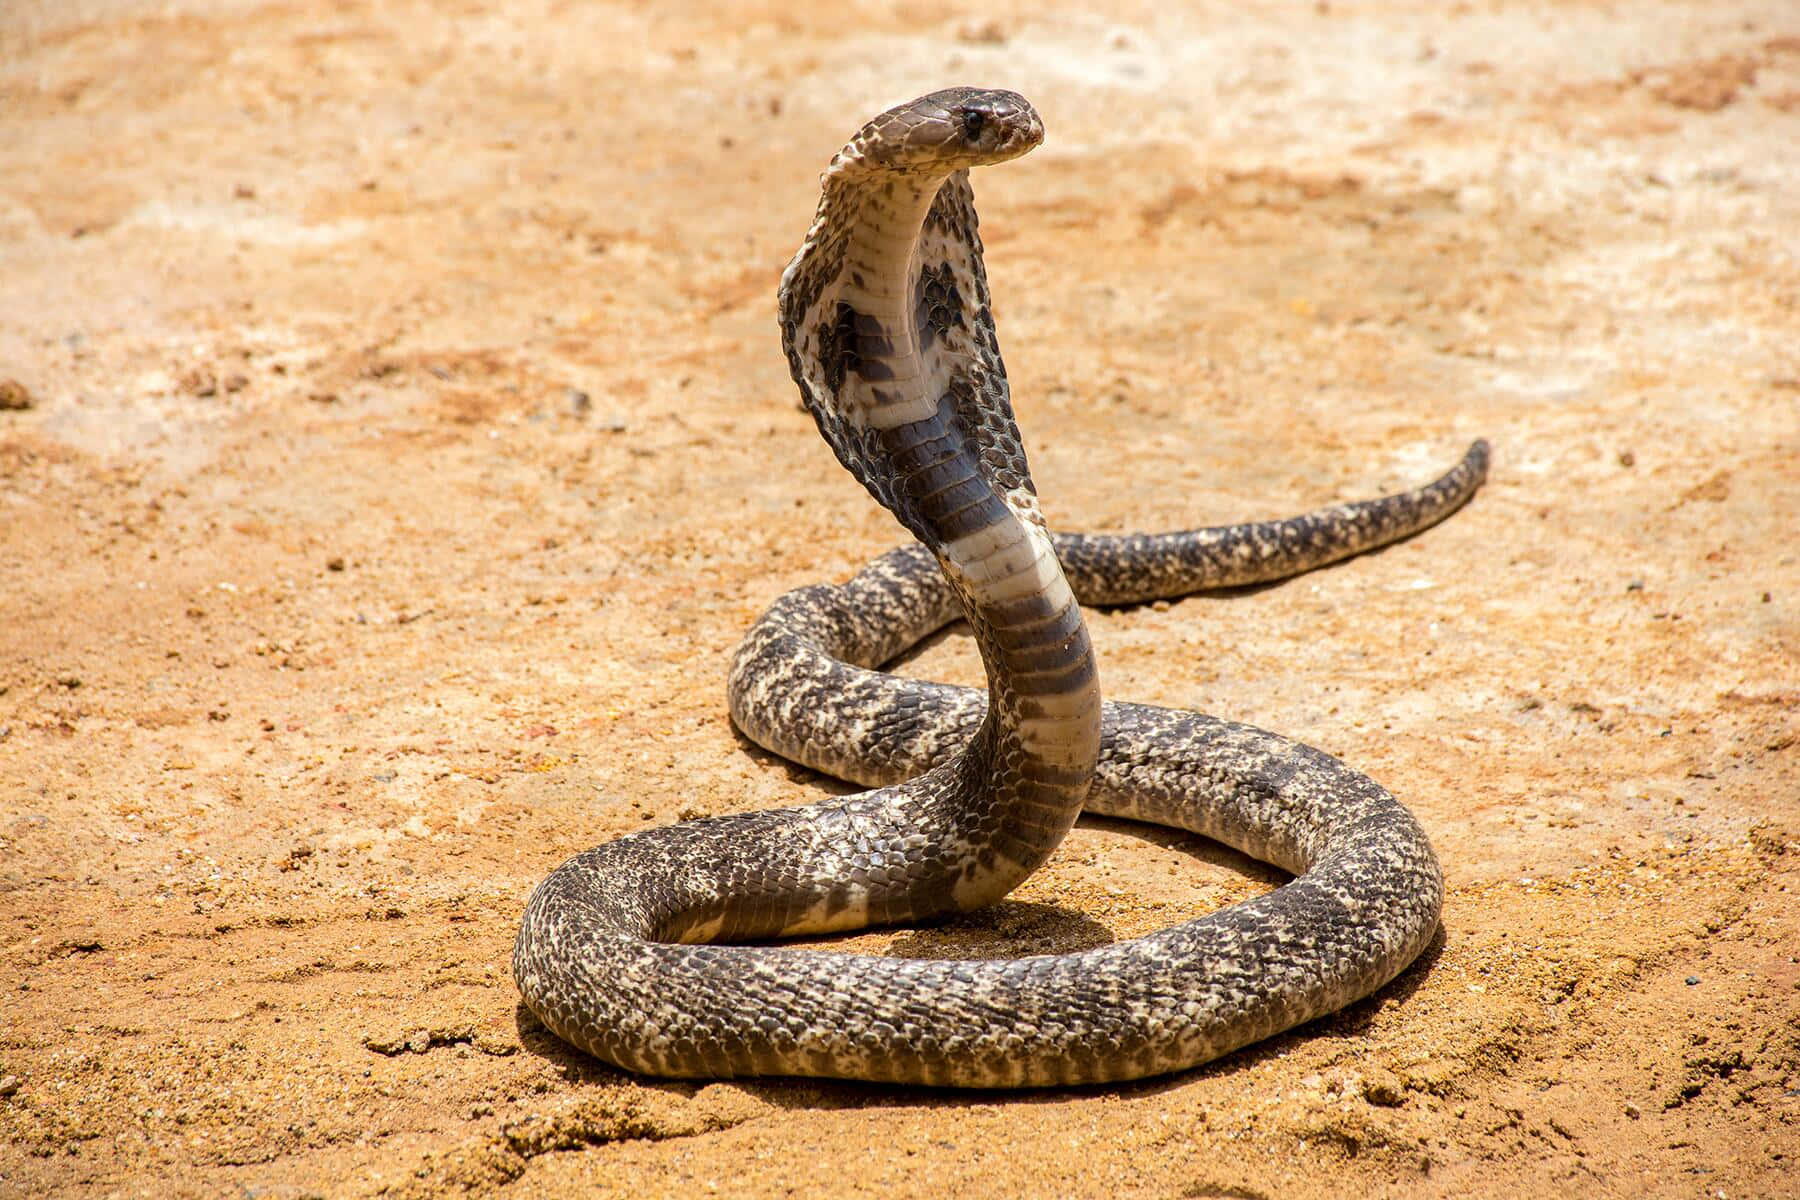 Closeup of a King Cobra